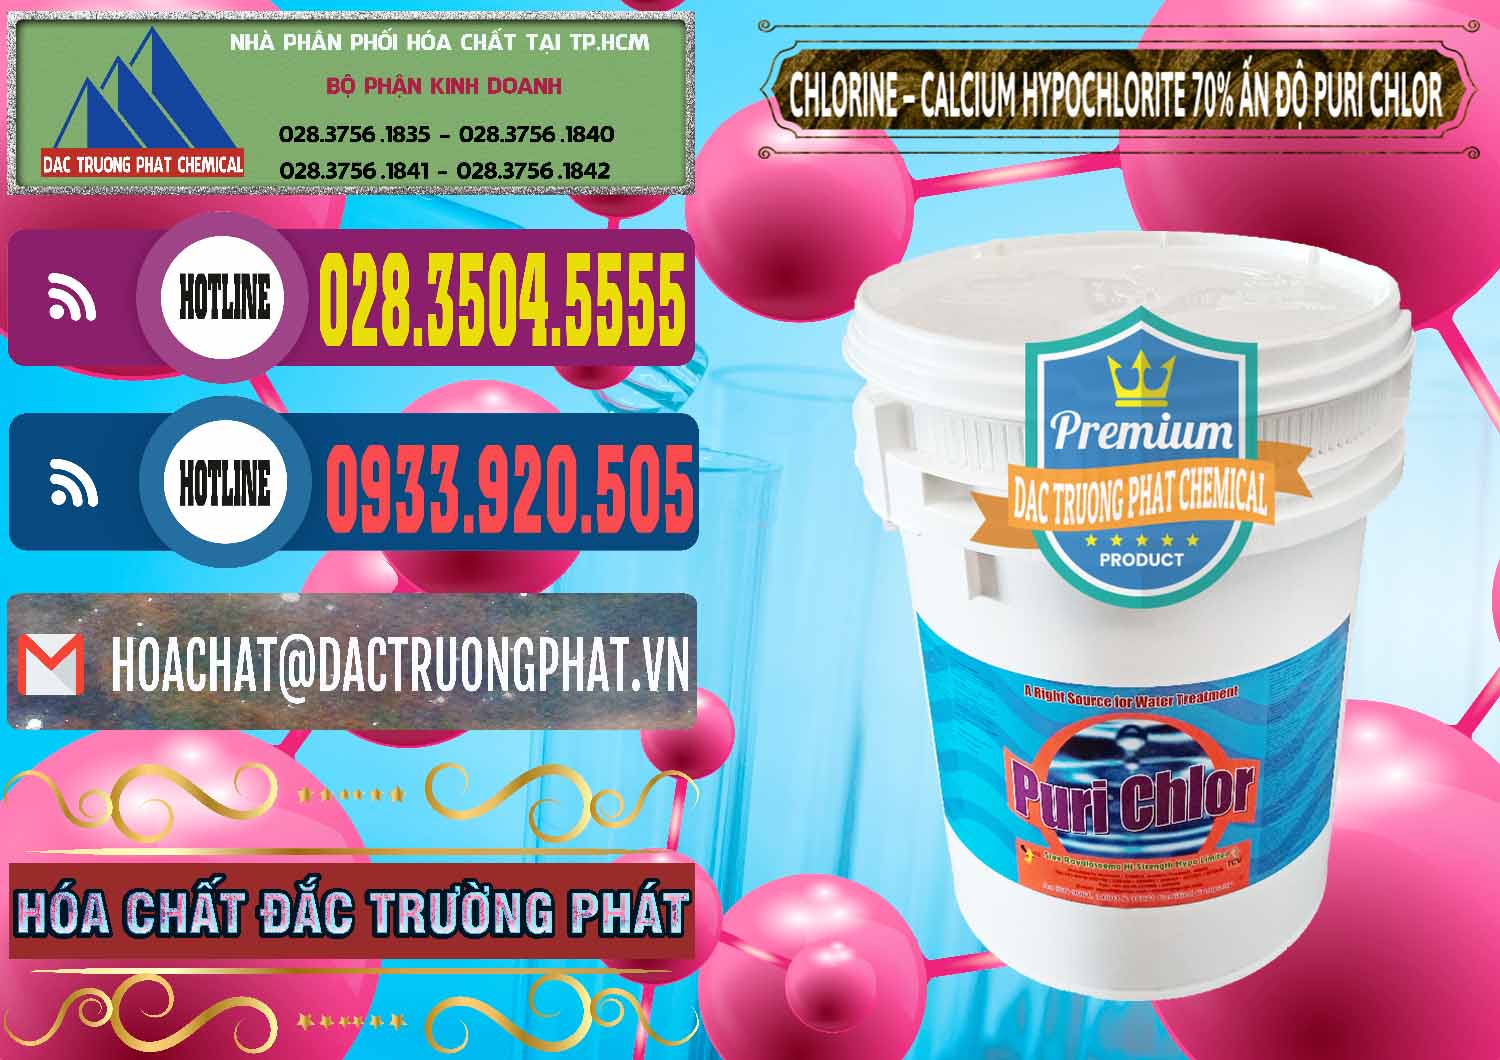 Cty chuyên kinh doanh - bán Chlorine – Clorin 70% Puri Chlo Ấn Độ India - 0123 - Cty chuyên nhập khẩu và cung cấp hóa chất tại TP.HCM - muabanhoachat.com.vn